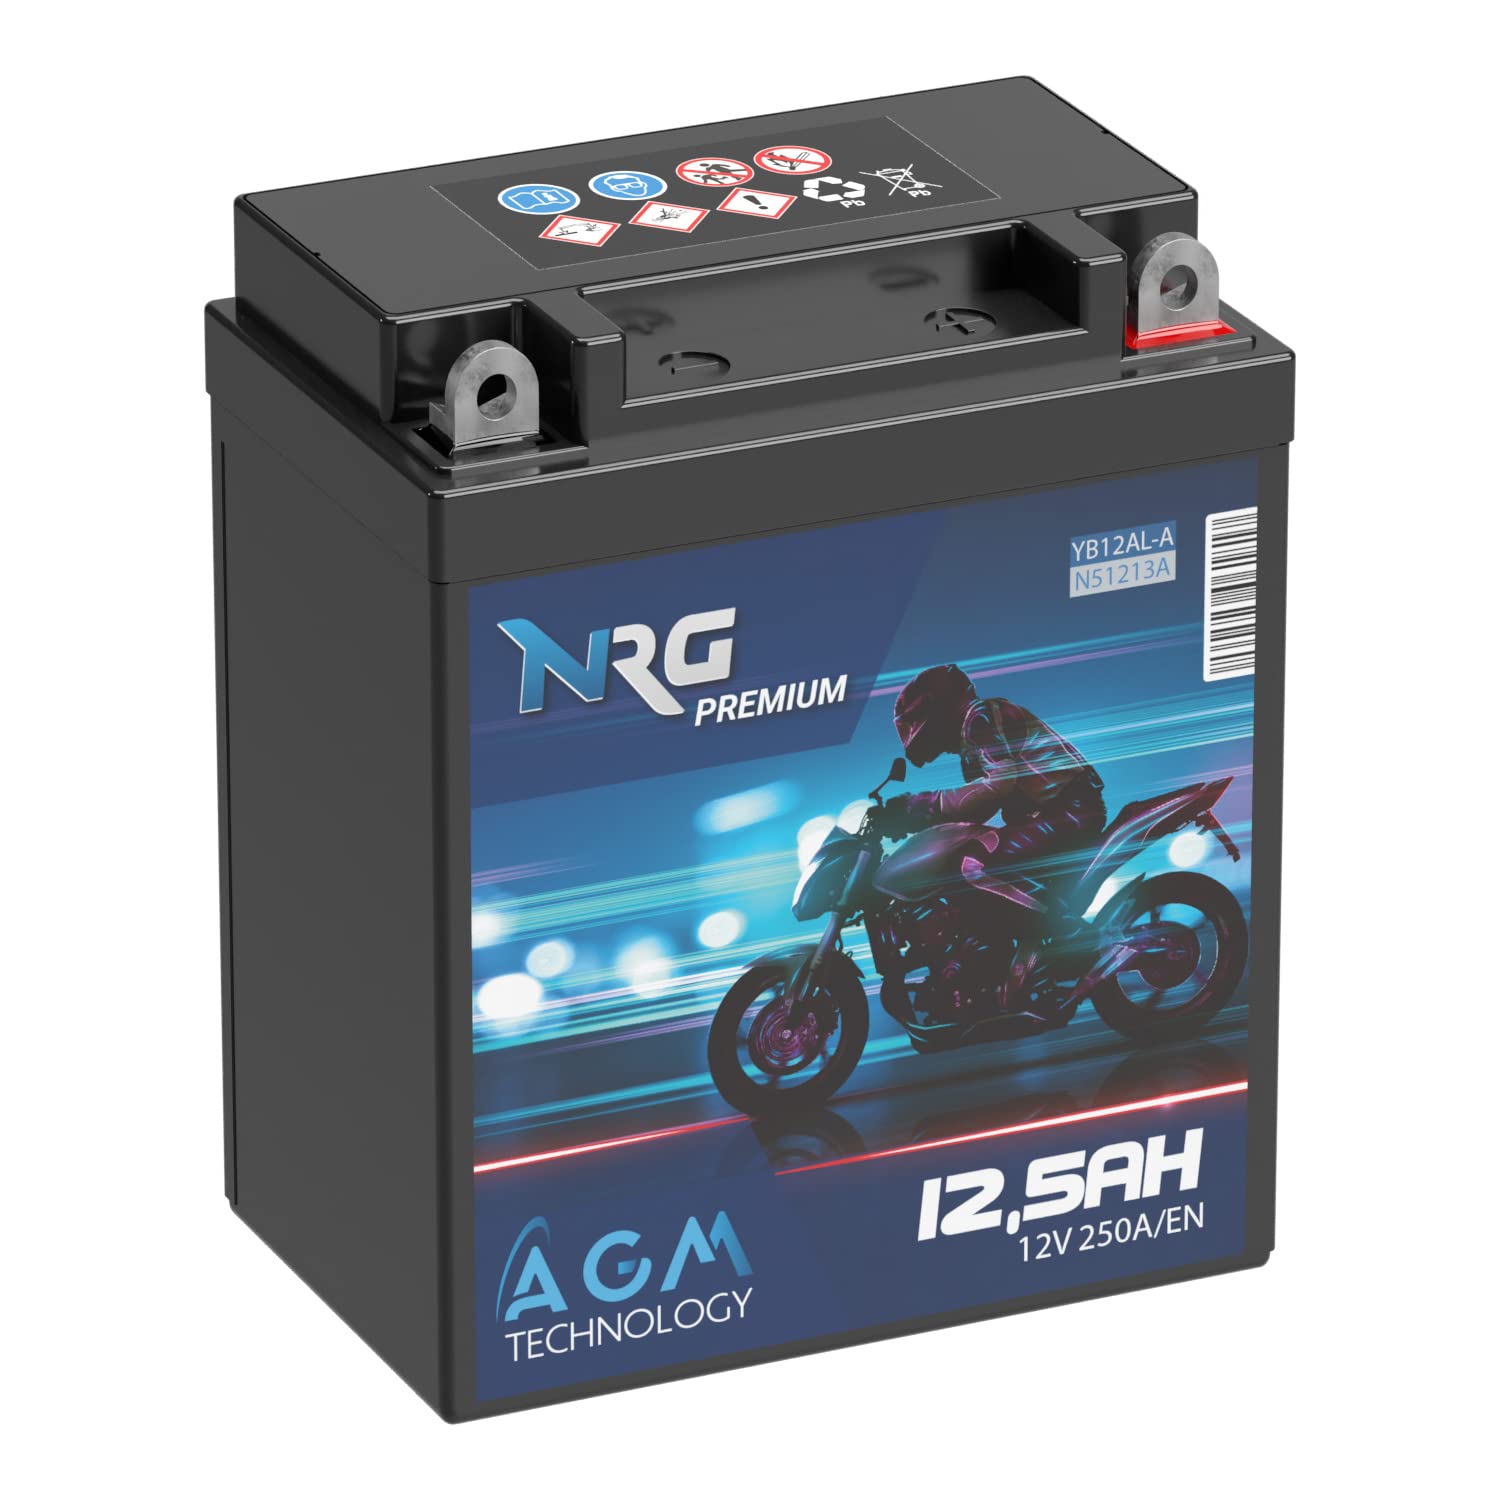 NRG Premium YB12AL-A2 AGM Motorradbatterie 12,5Ah 12V 250A/EN Batterie 51213 YB12AL-A auslaufsicher wartungsfrei ersetzt 12Ah 10Ah von NRG PREMIUM